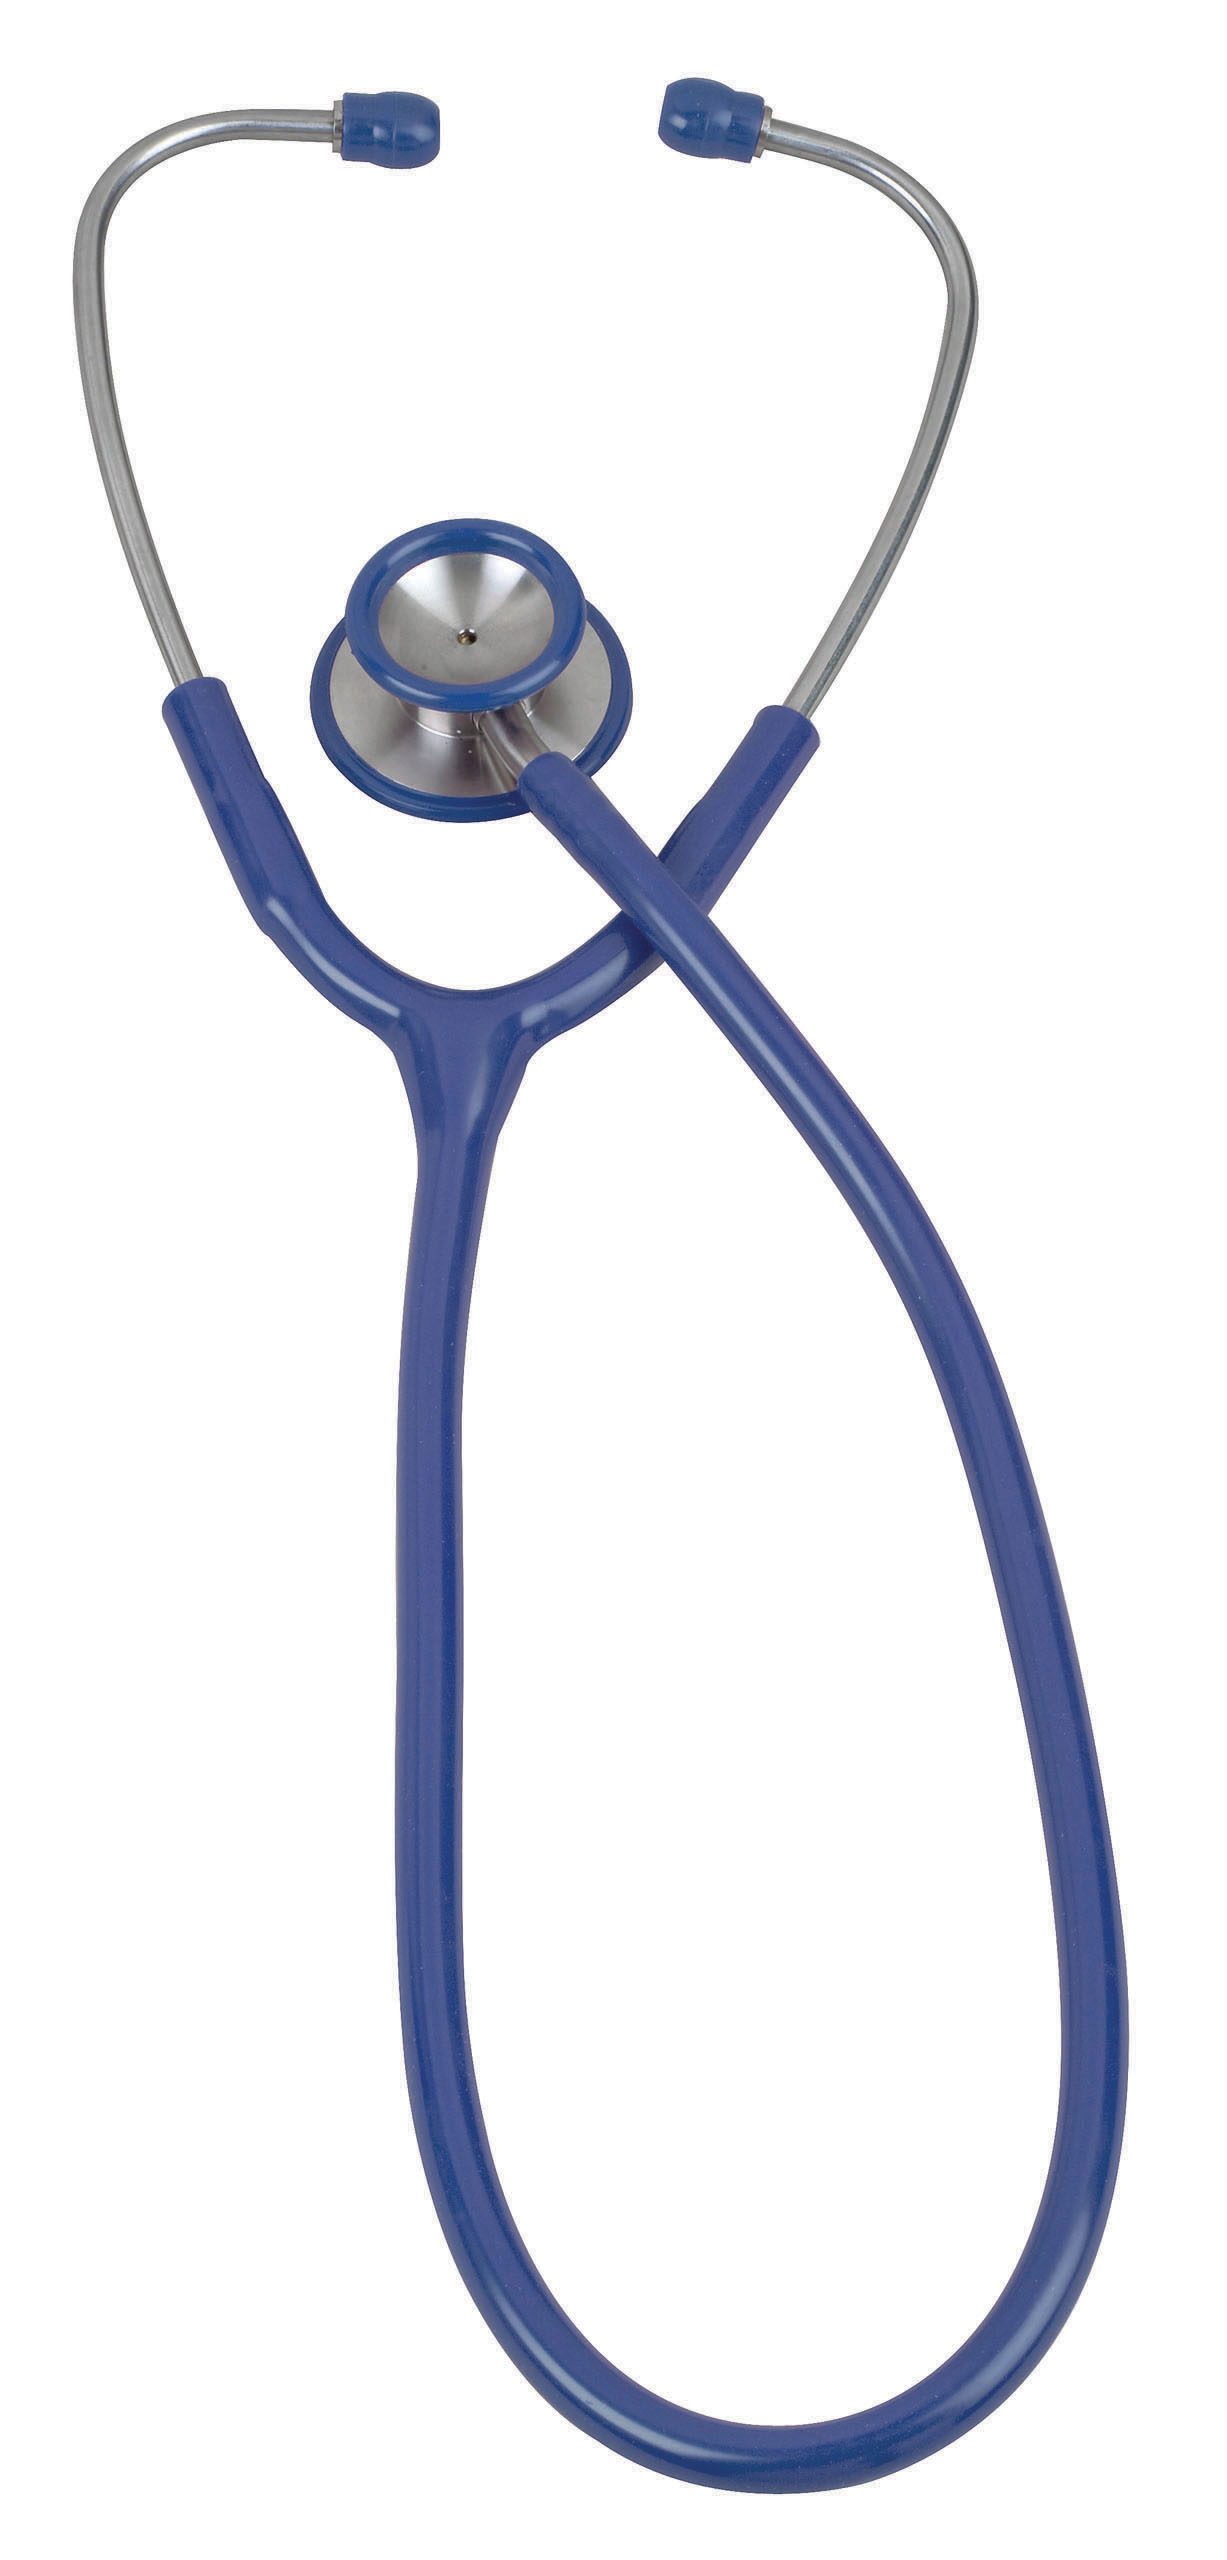 pinnacle-series-stainless-steel-adult-stethoscope-royal-blue-05-10503-veridian-2.jpg